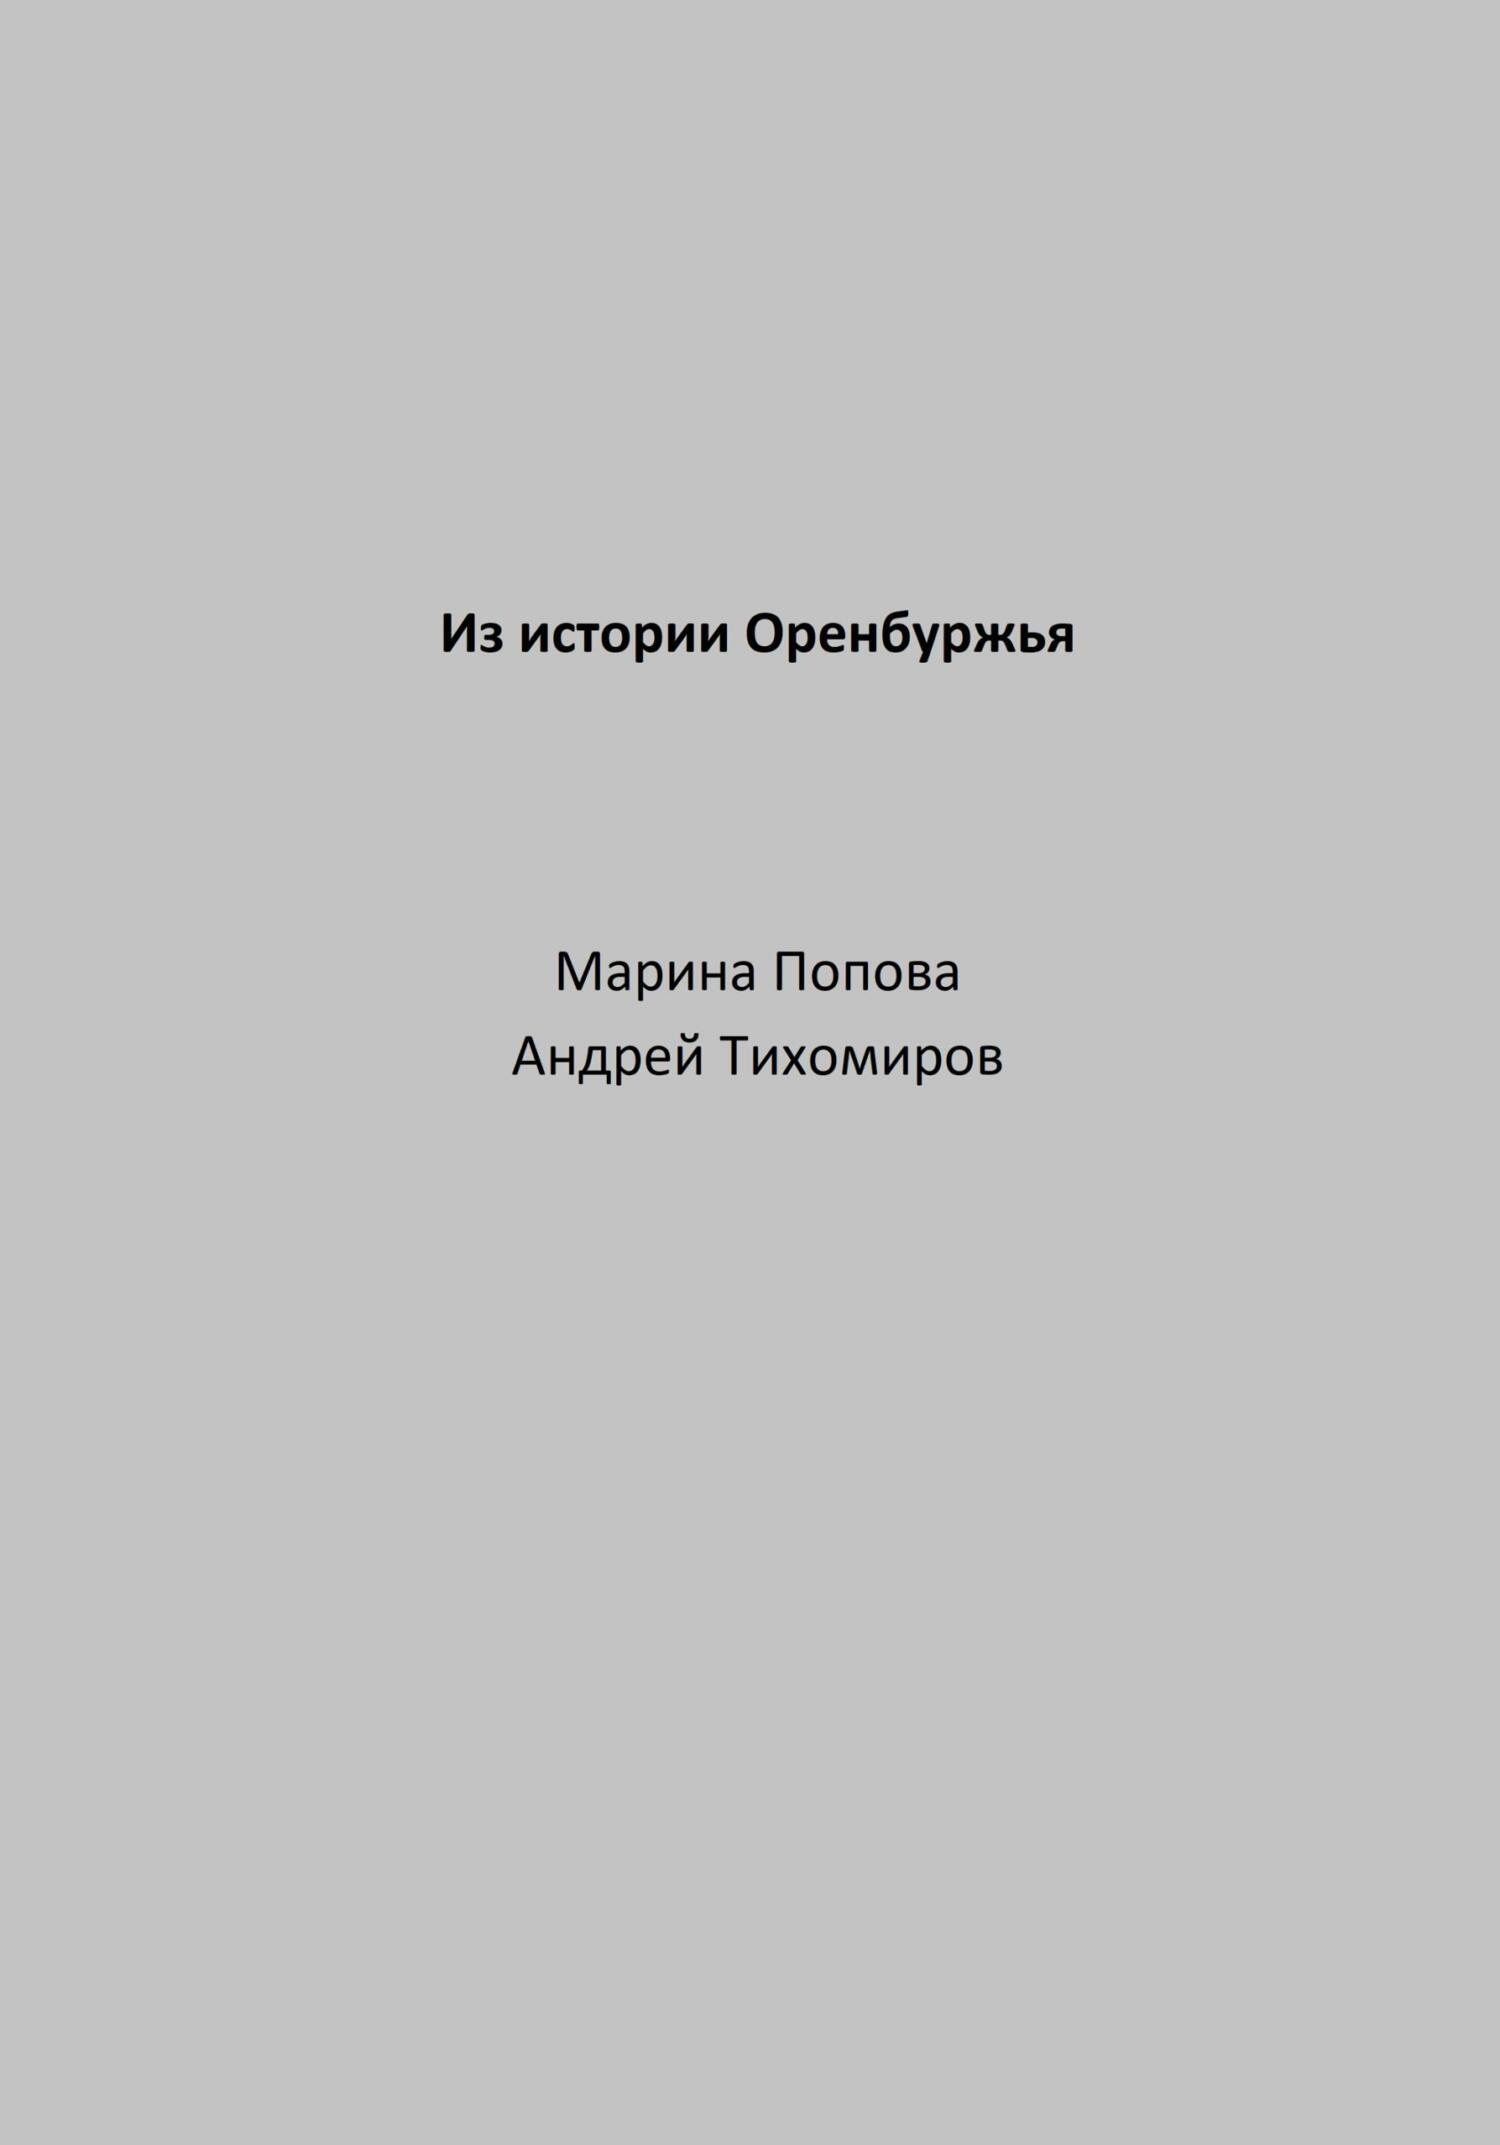 Из истории Оренбуржья - Андрей Тихомиров